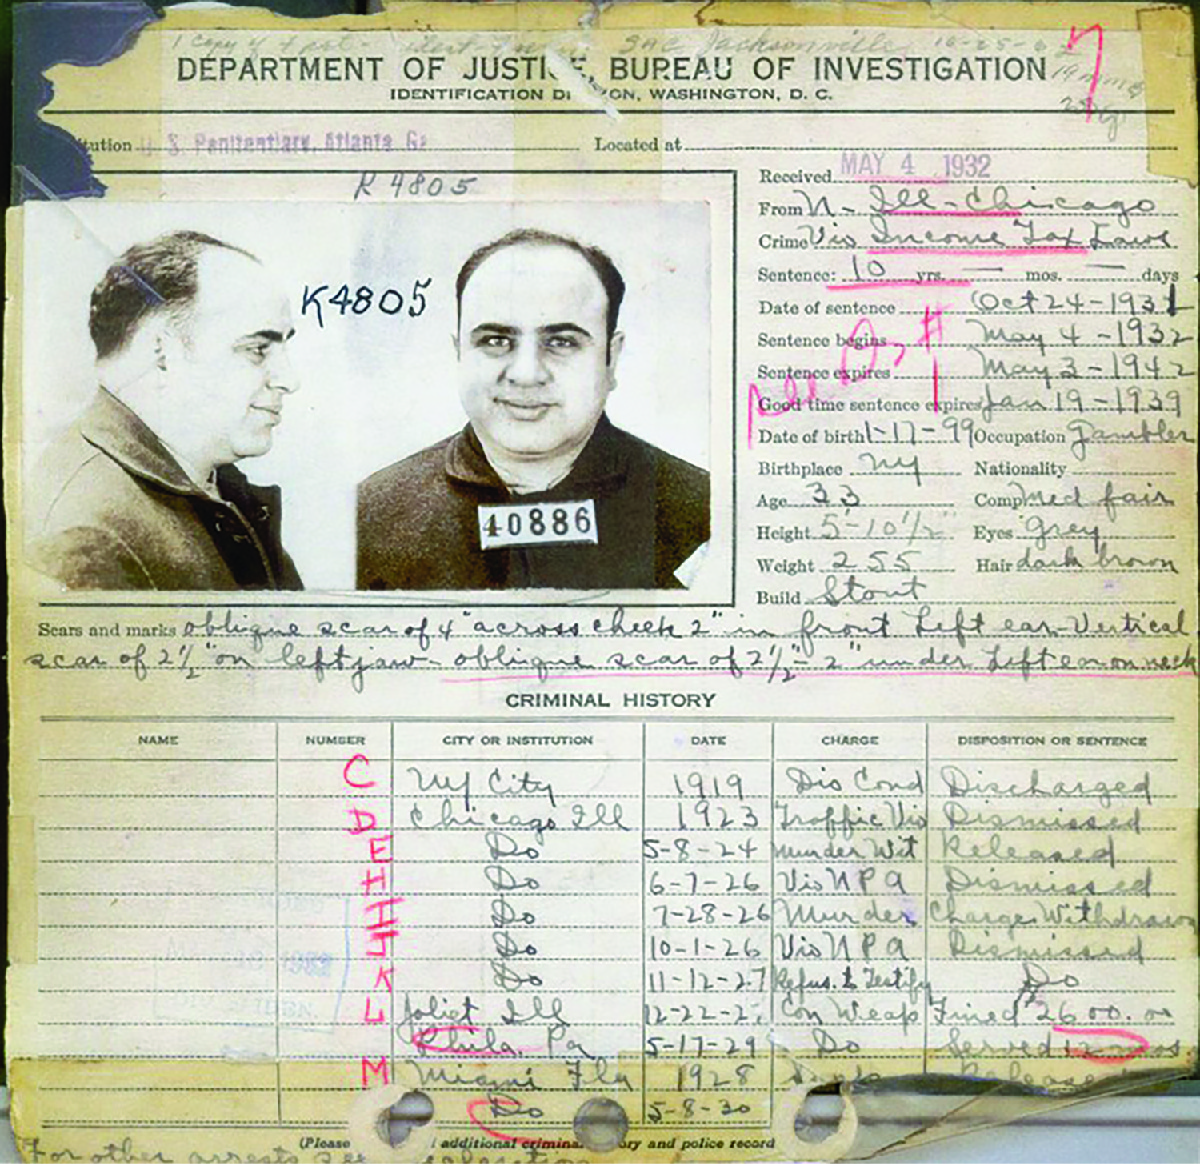 Rekodi ya jinai ya FBI ya 1932 kwenye Al Capone inaonyesha mashtaka mengi dhidi yake, ambayo mengi yalifukuzwa kazi.